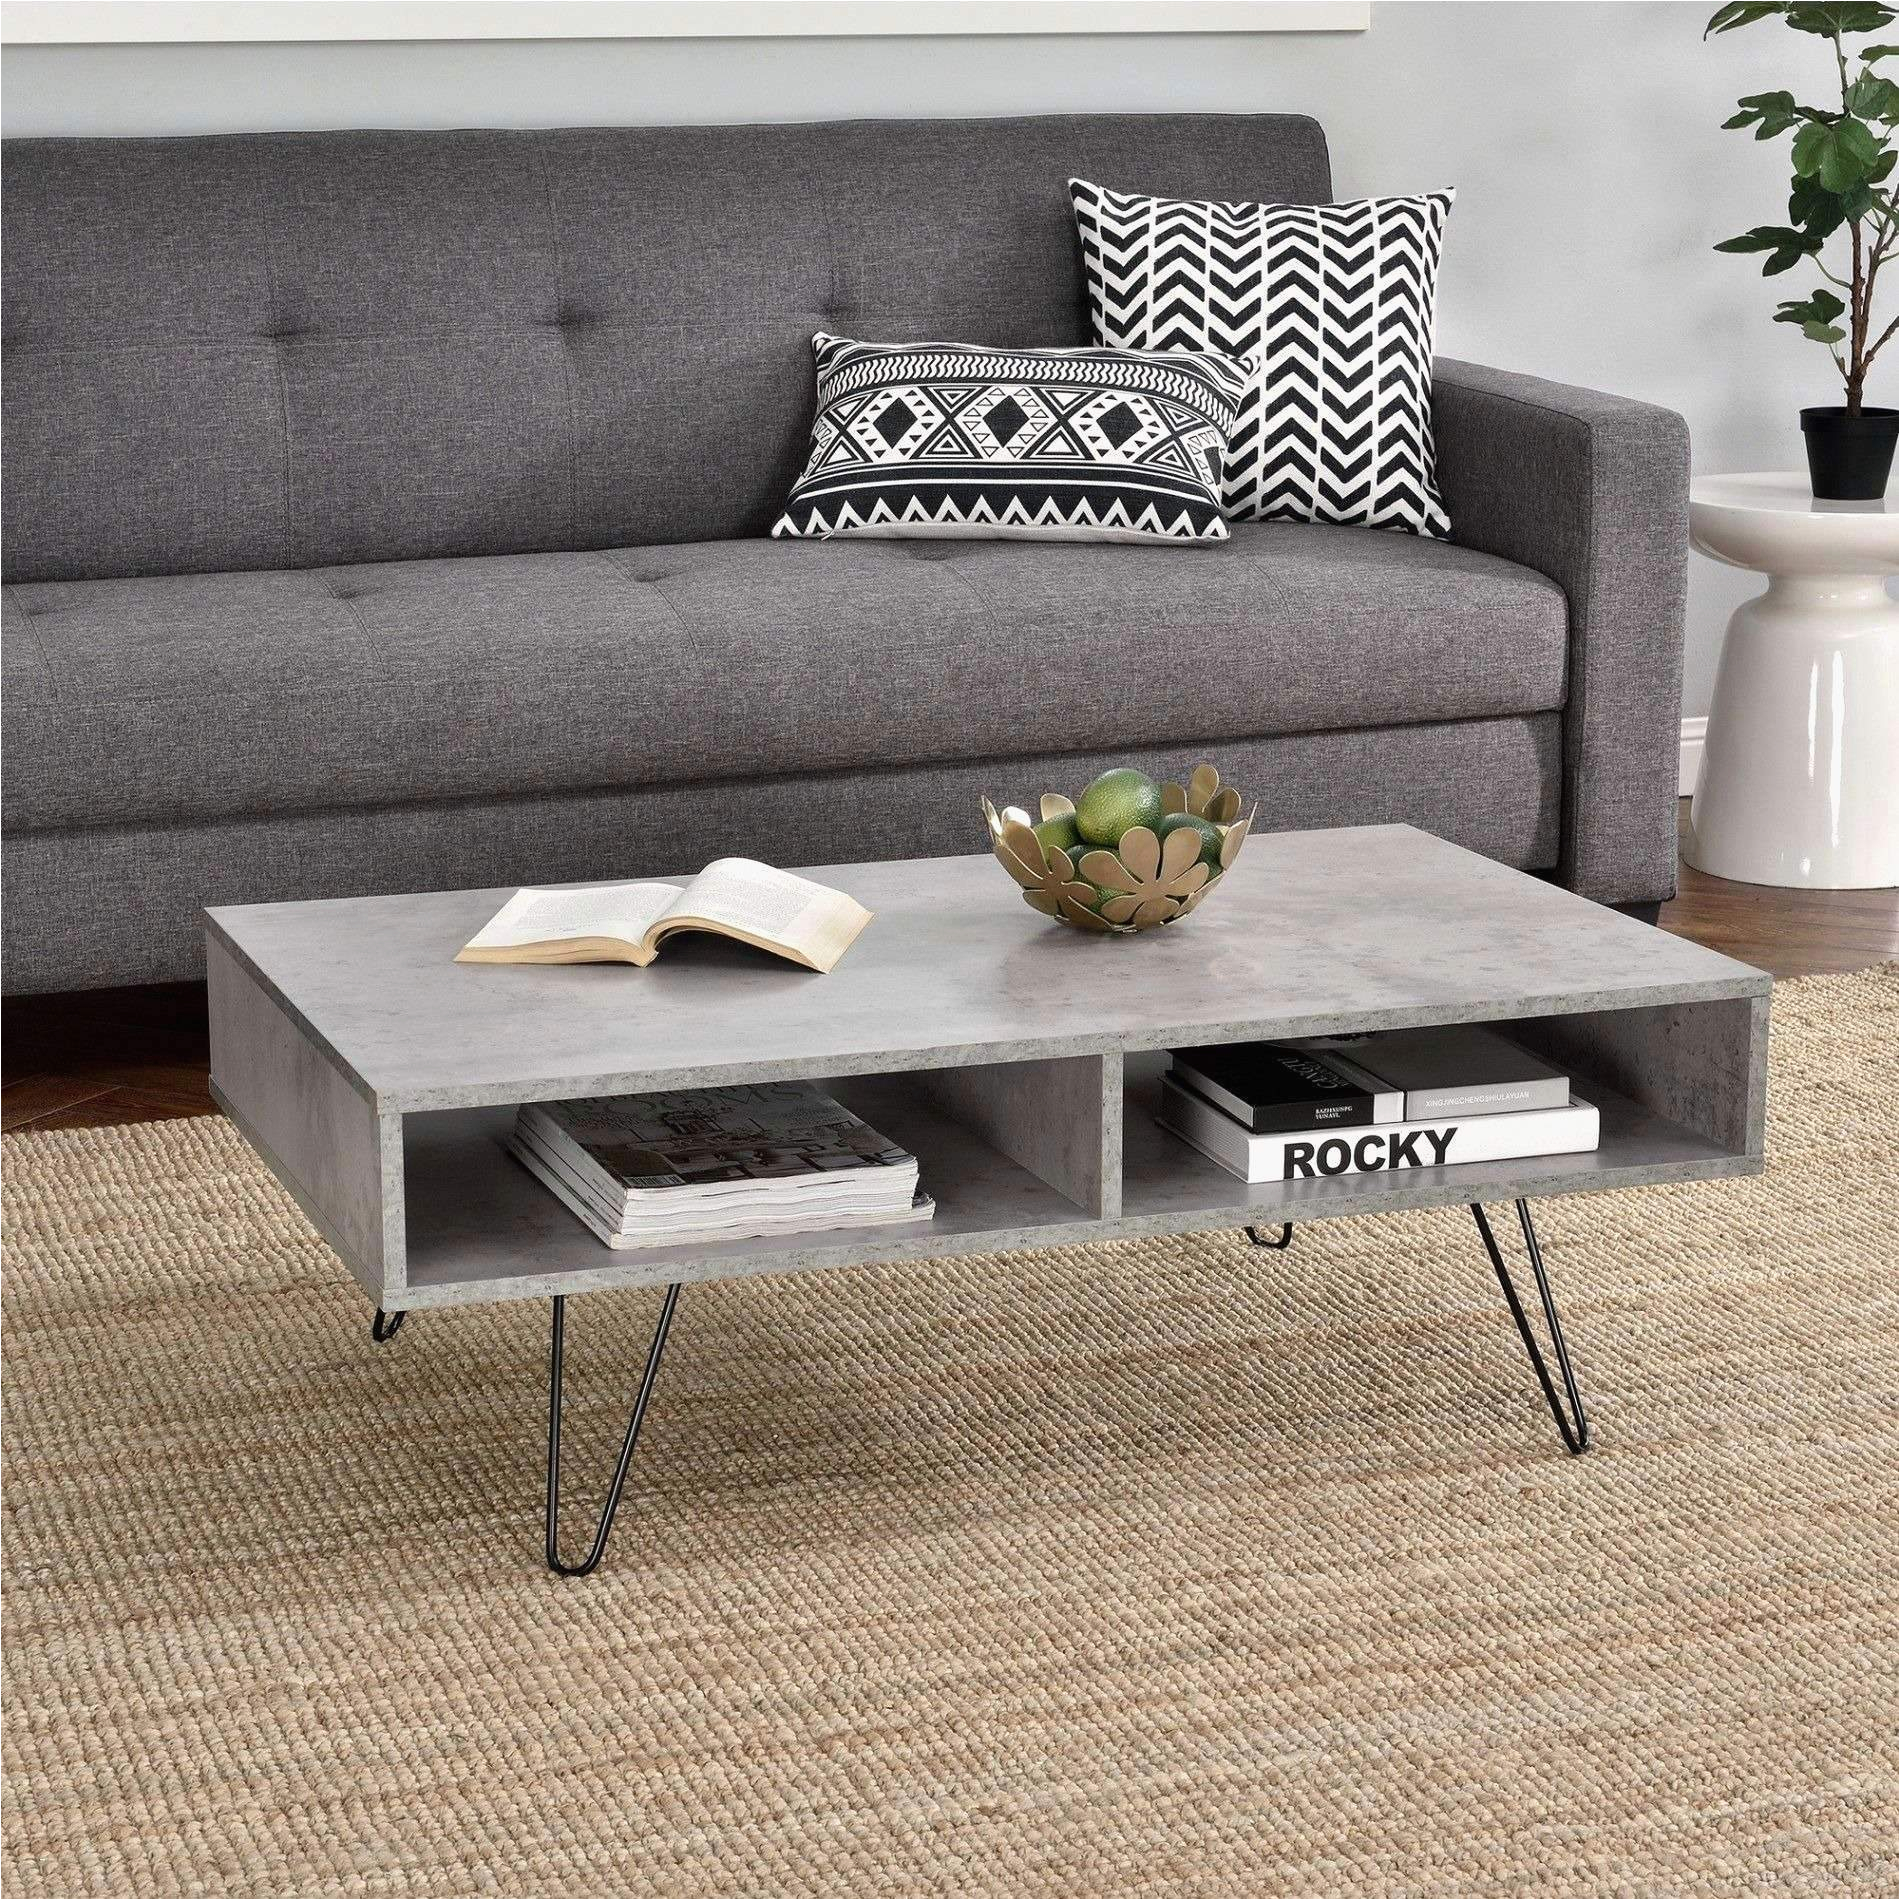 Grey sofa Design sofa Wohnzimmer Elegant Inspiration Wohnzimmer 0d